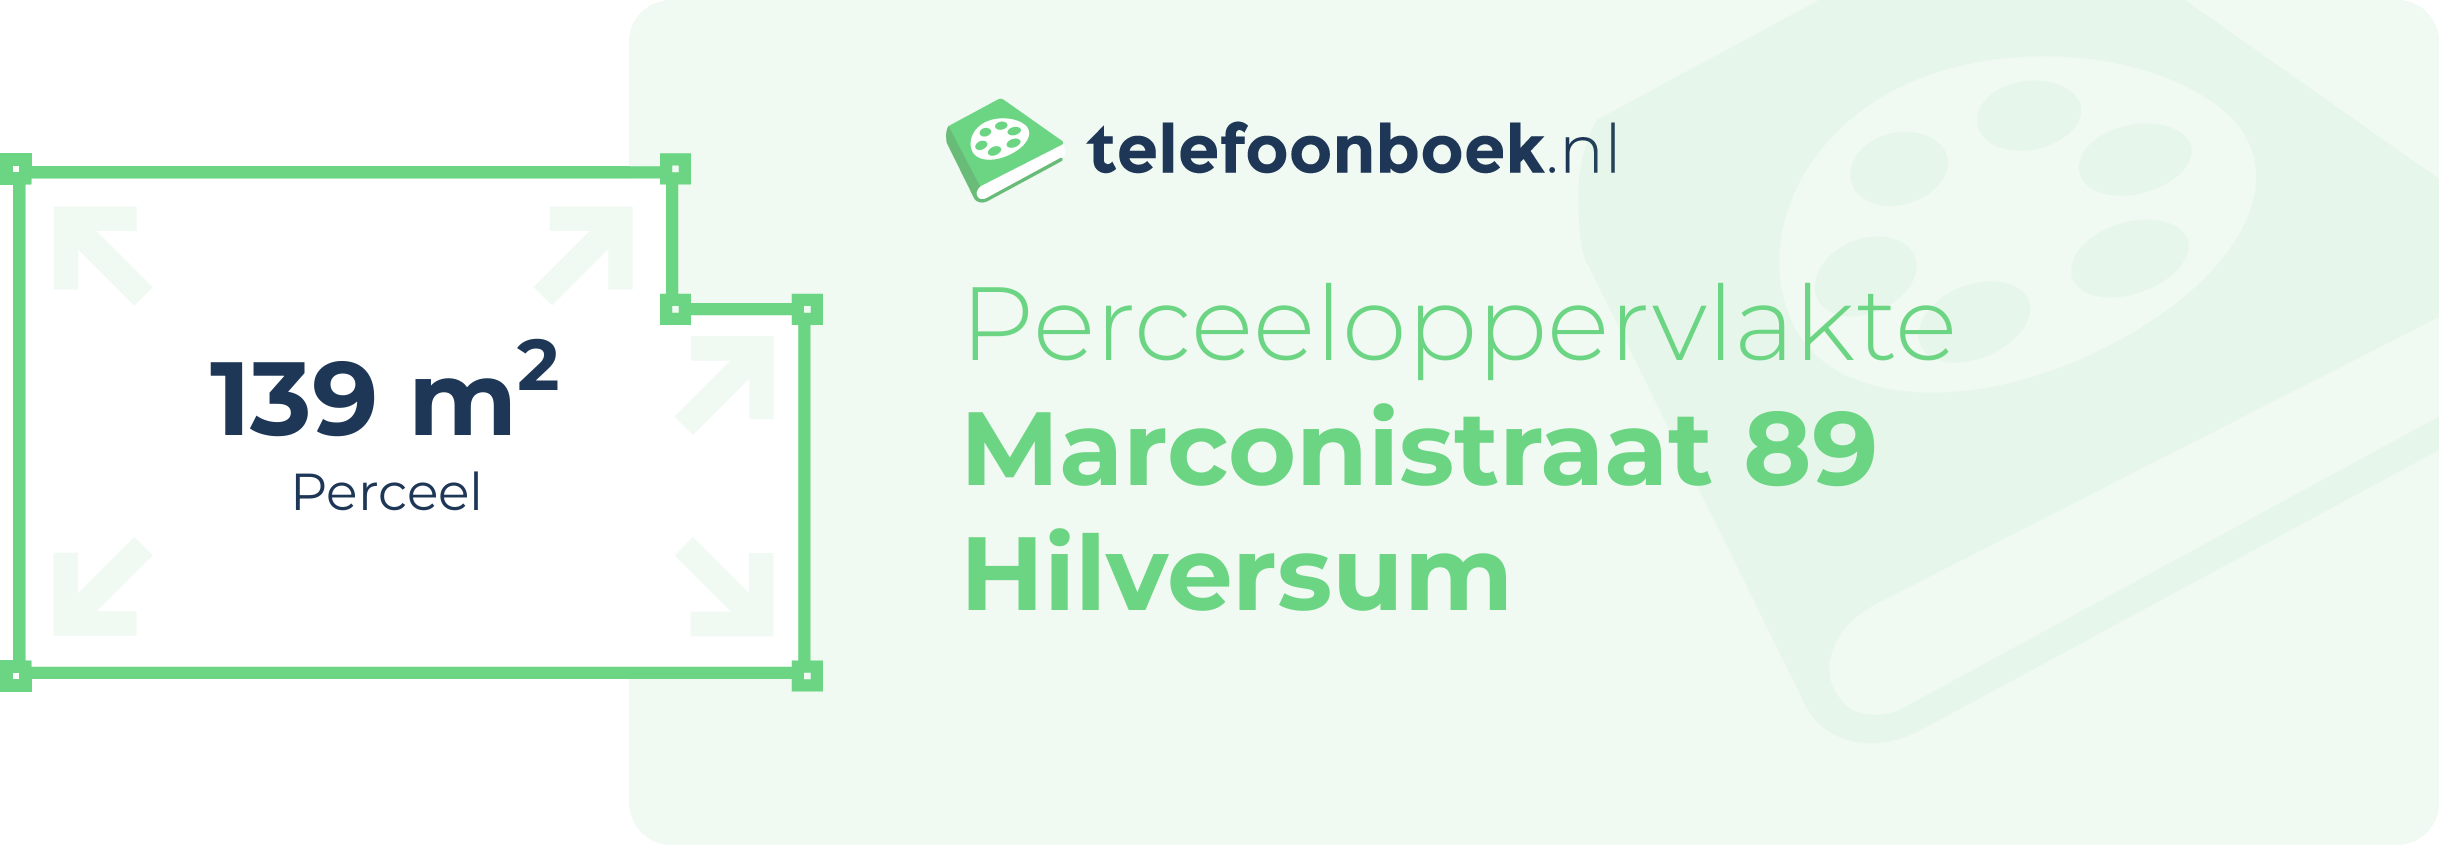 Perceeloppervlakte Marconistraat 89 Hilversum